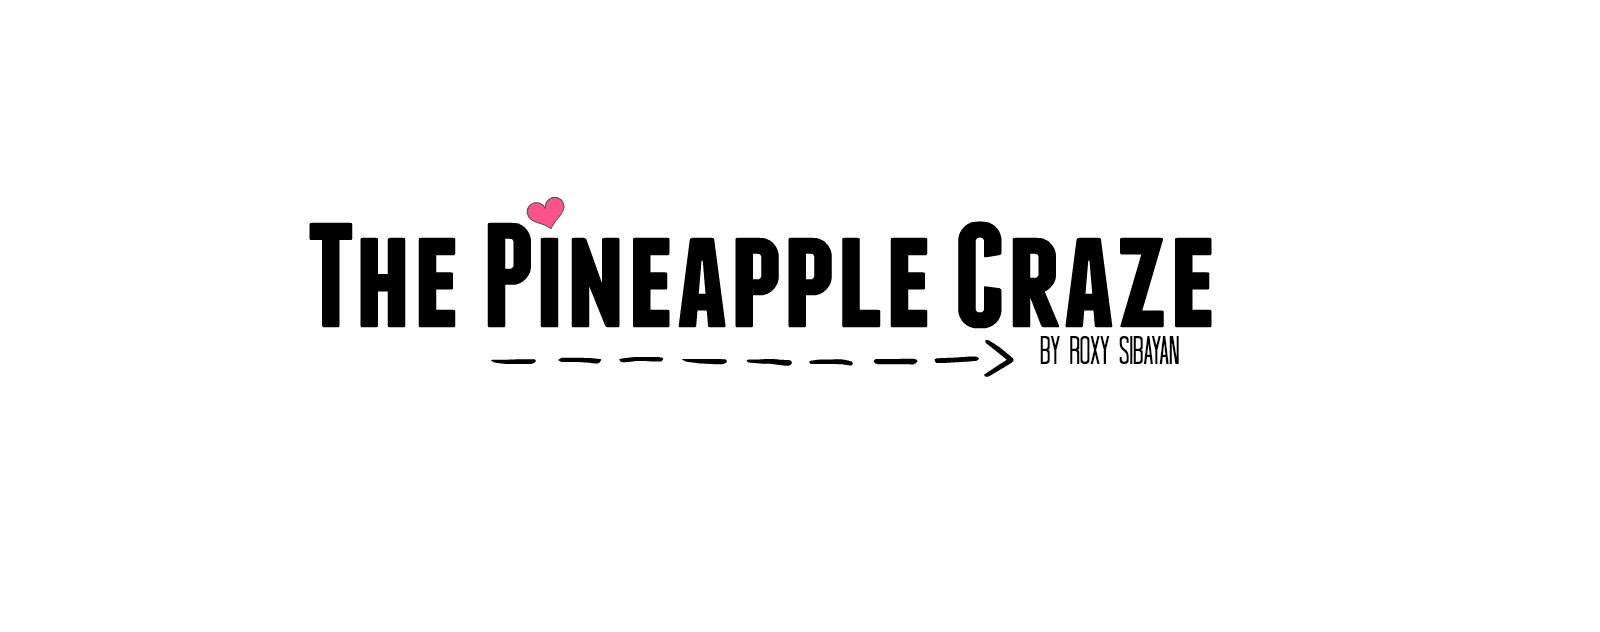 The Pineapple Craze